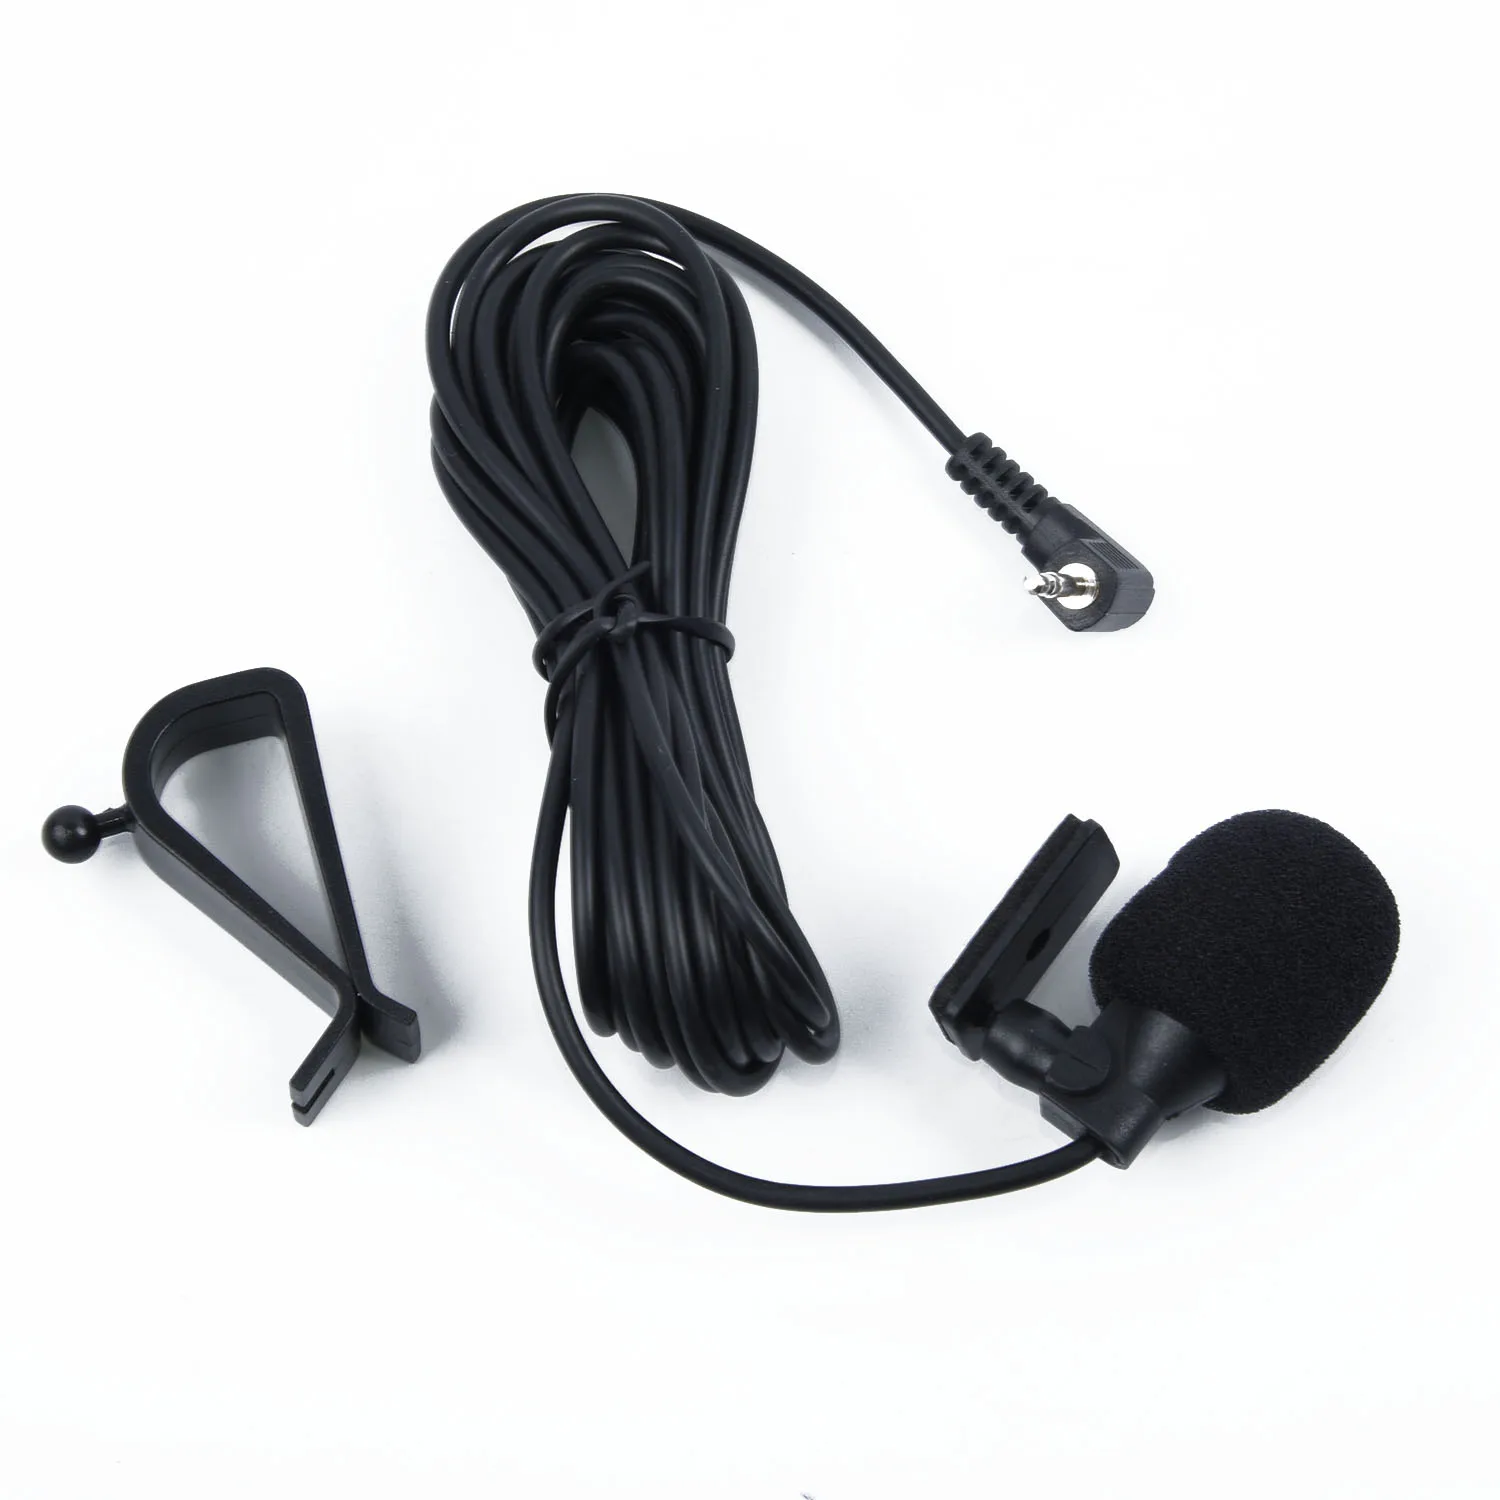 

Автомобильный аудиомикрофон 2,5 мм, внешний микрофон для автомобильного головного устройства автомобиля, с поддержкой Bluetooth, стереомагнитола, GPS, DVD, детской версии